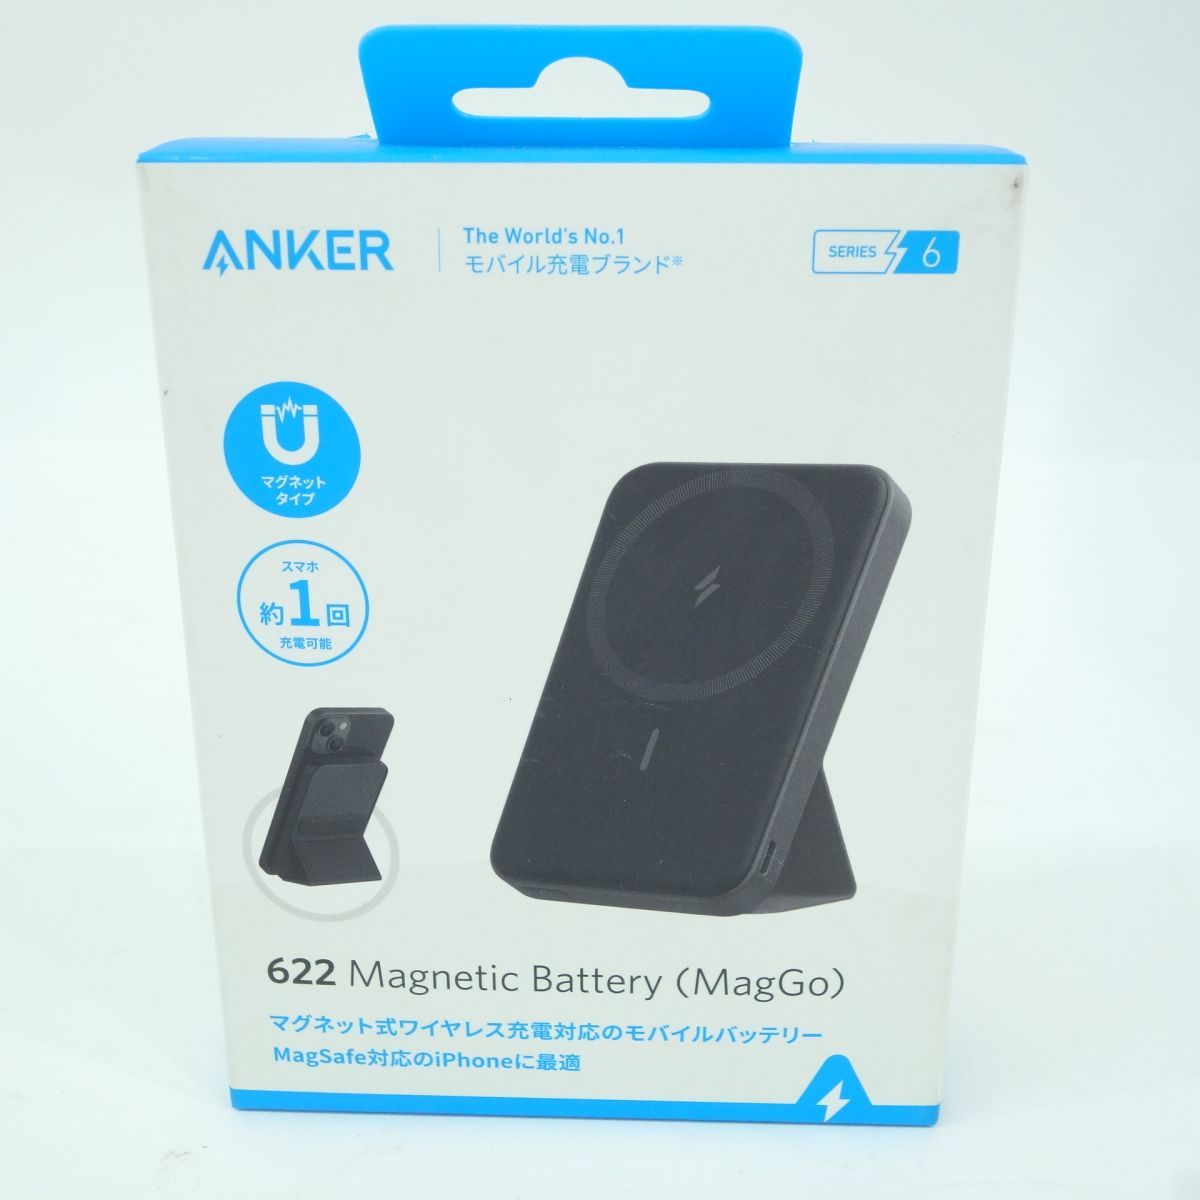 新品:Anker 622 Magnetic Battery(MagGo)ブラック